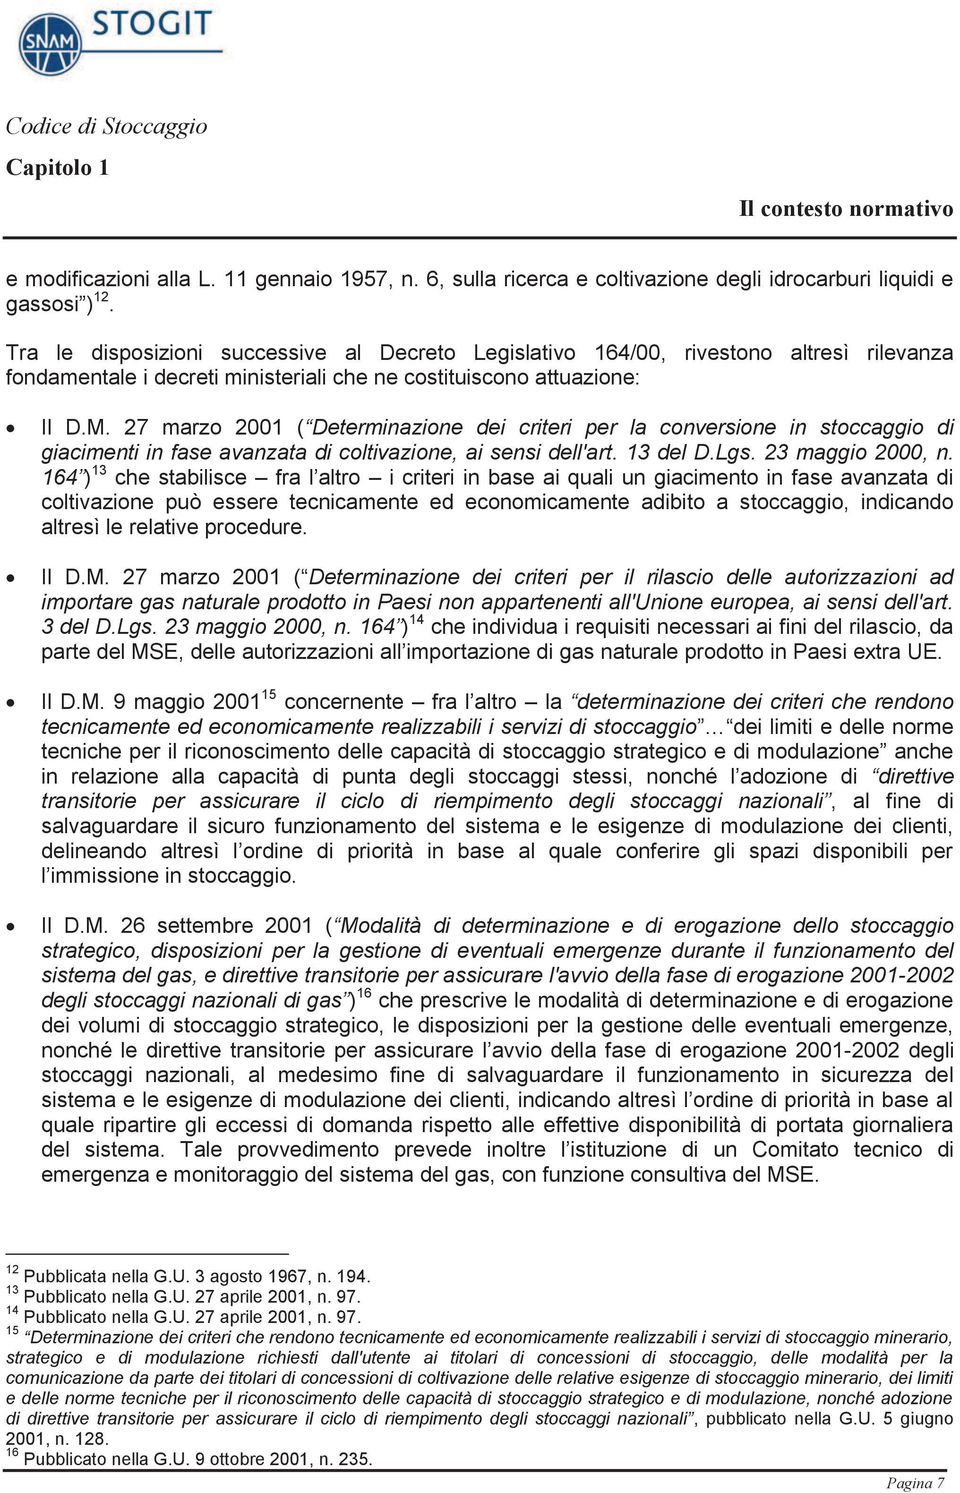 27 marzo 2001 ( Determinazione dei criteri per la conversione in stoccaggio di giacimenti in fase avanzata di coltivazione, ai sensi dell'art. 13 del D.Lgs. 23 maggio 2000, n.